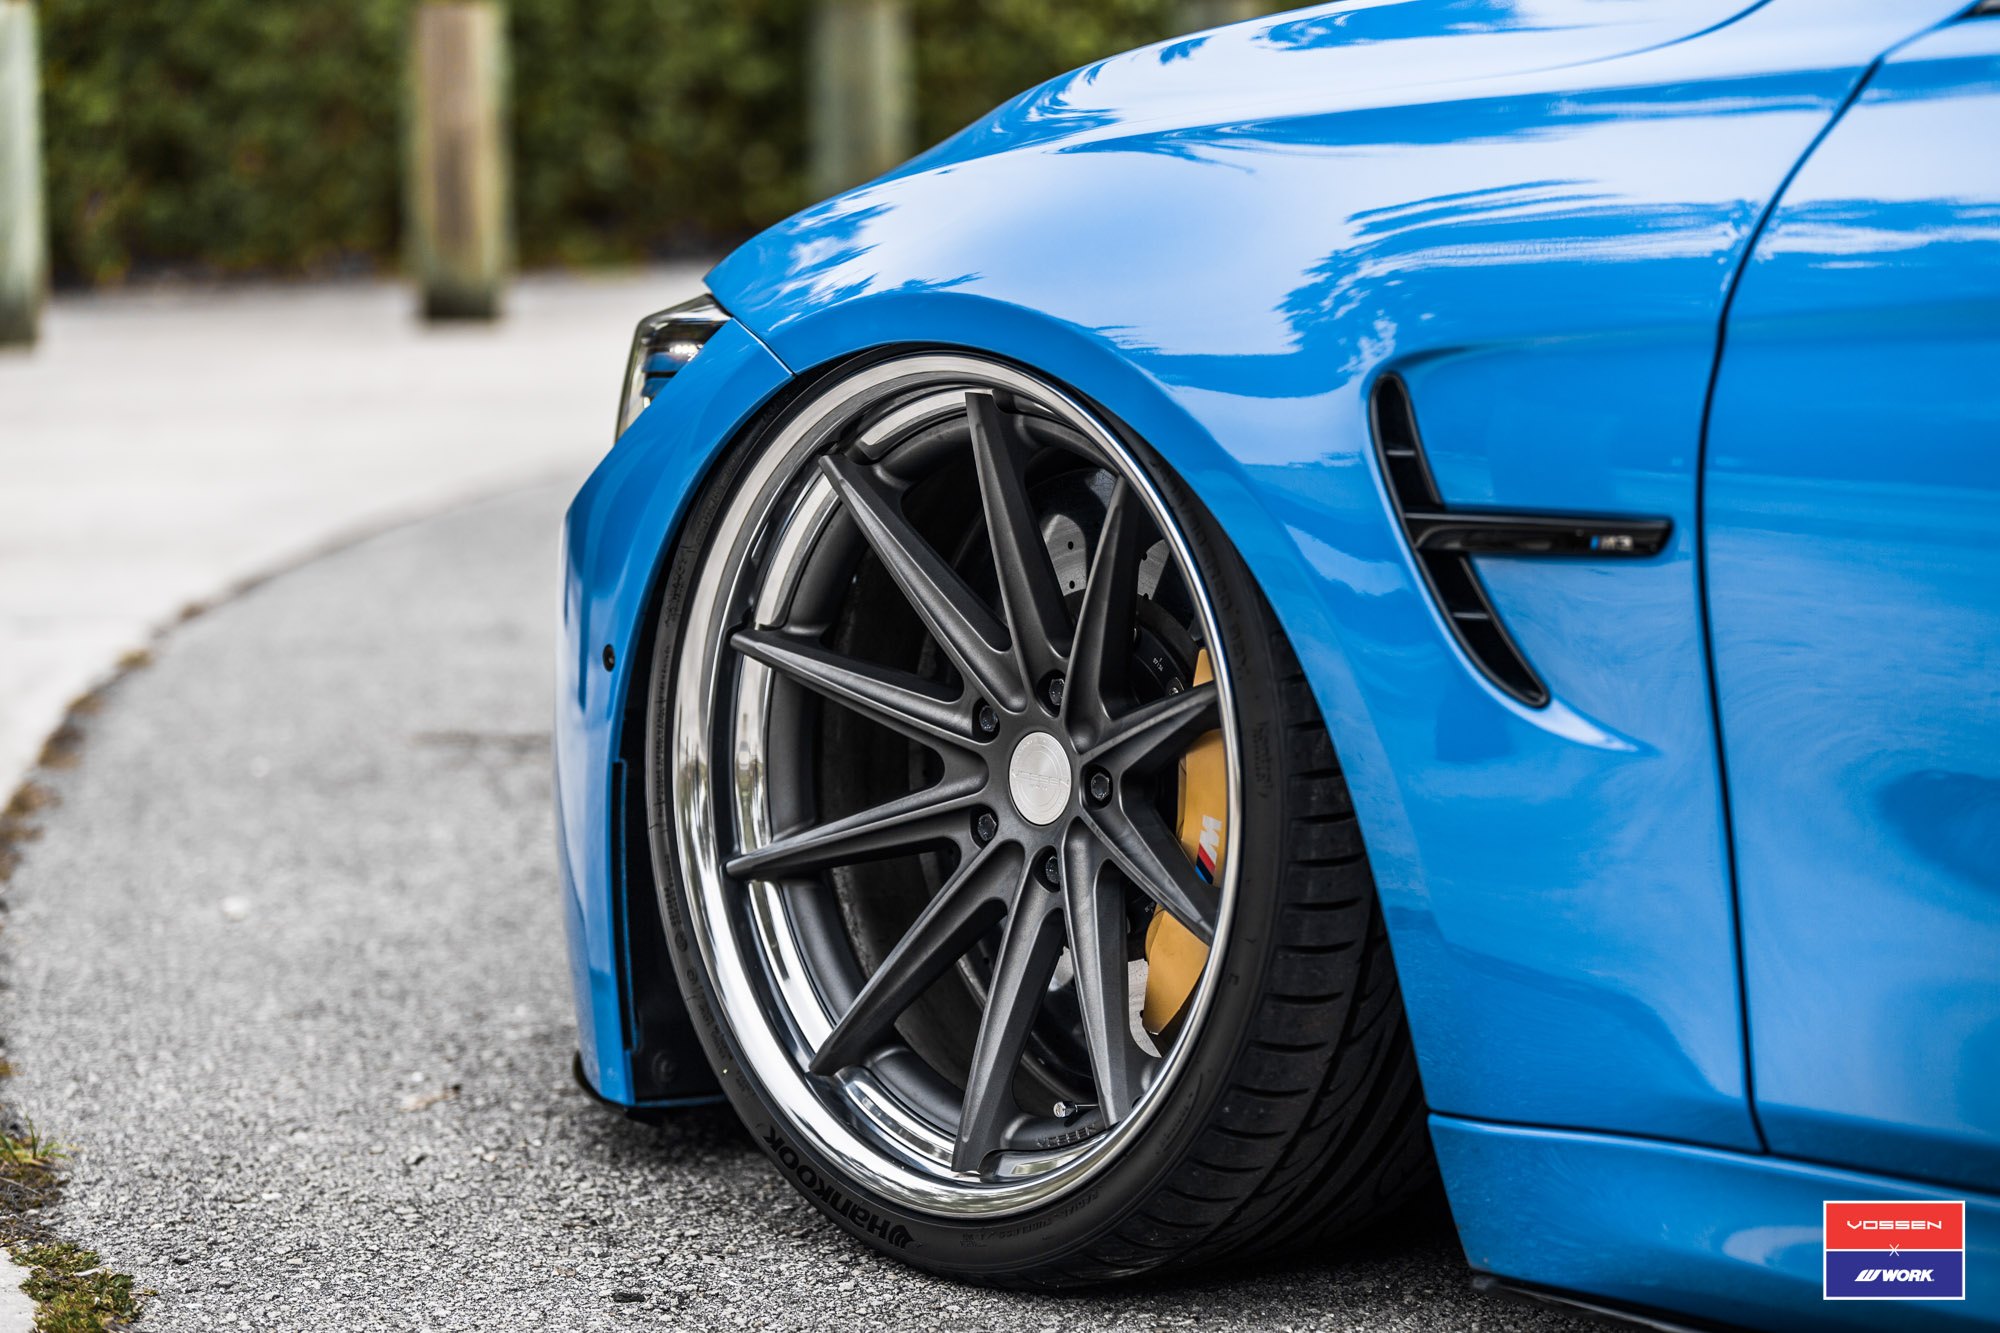 Vossen Work Series Rims on Blue BMW 3-Series - Photo by Vossen